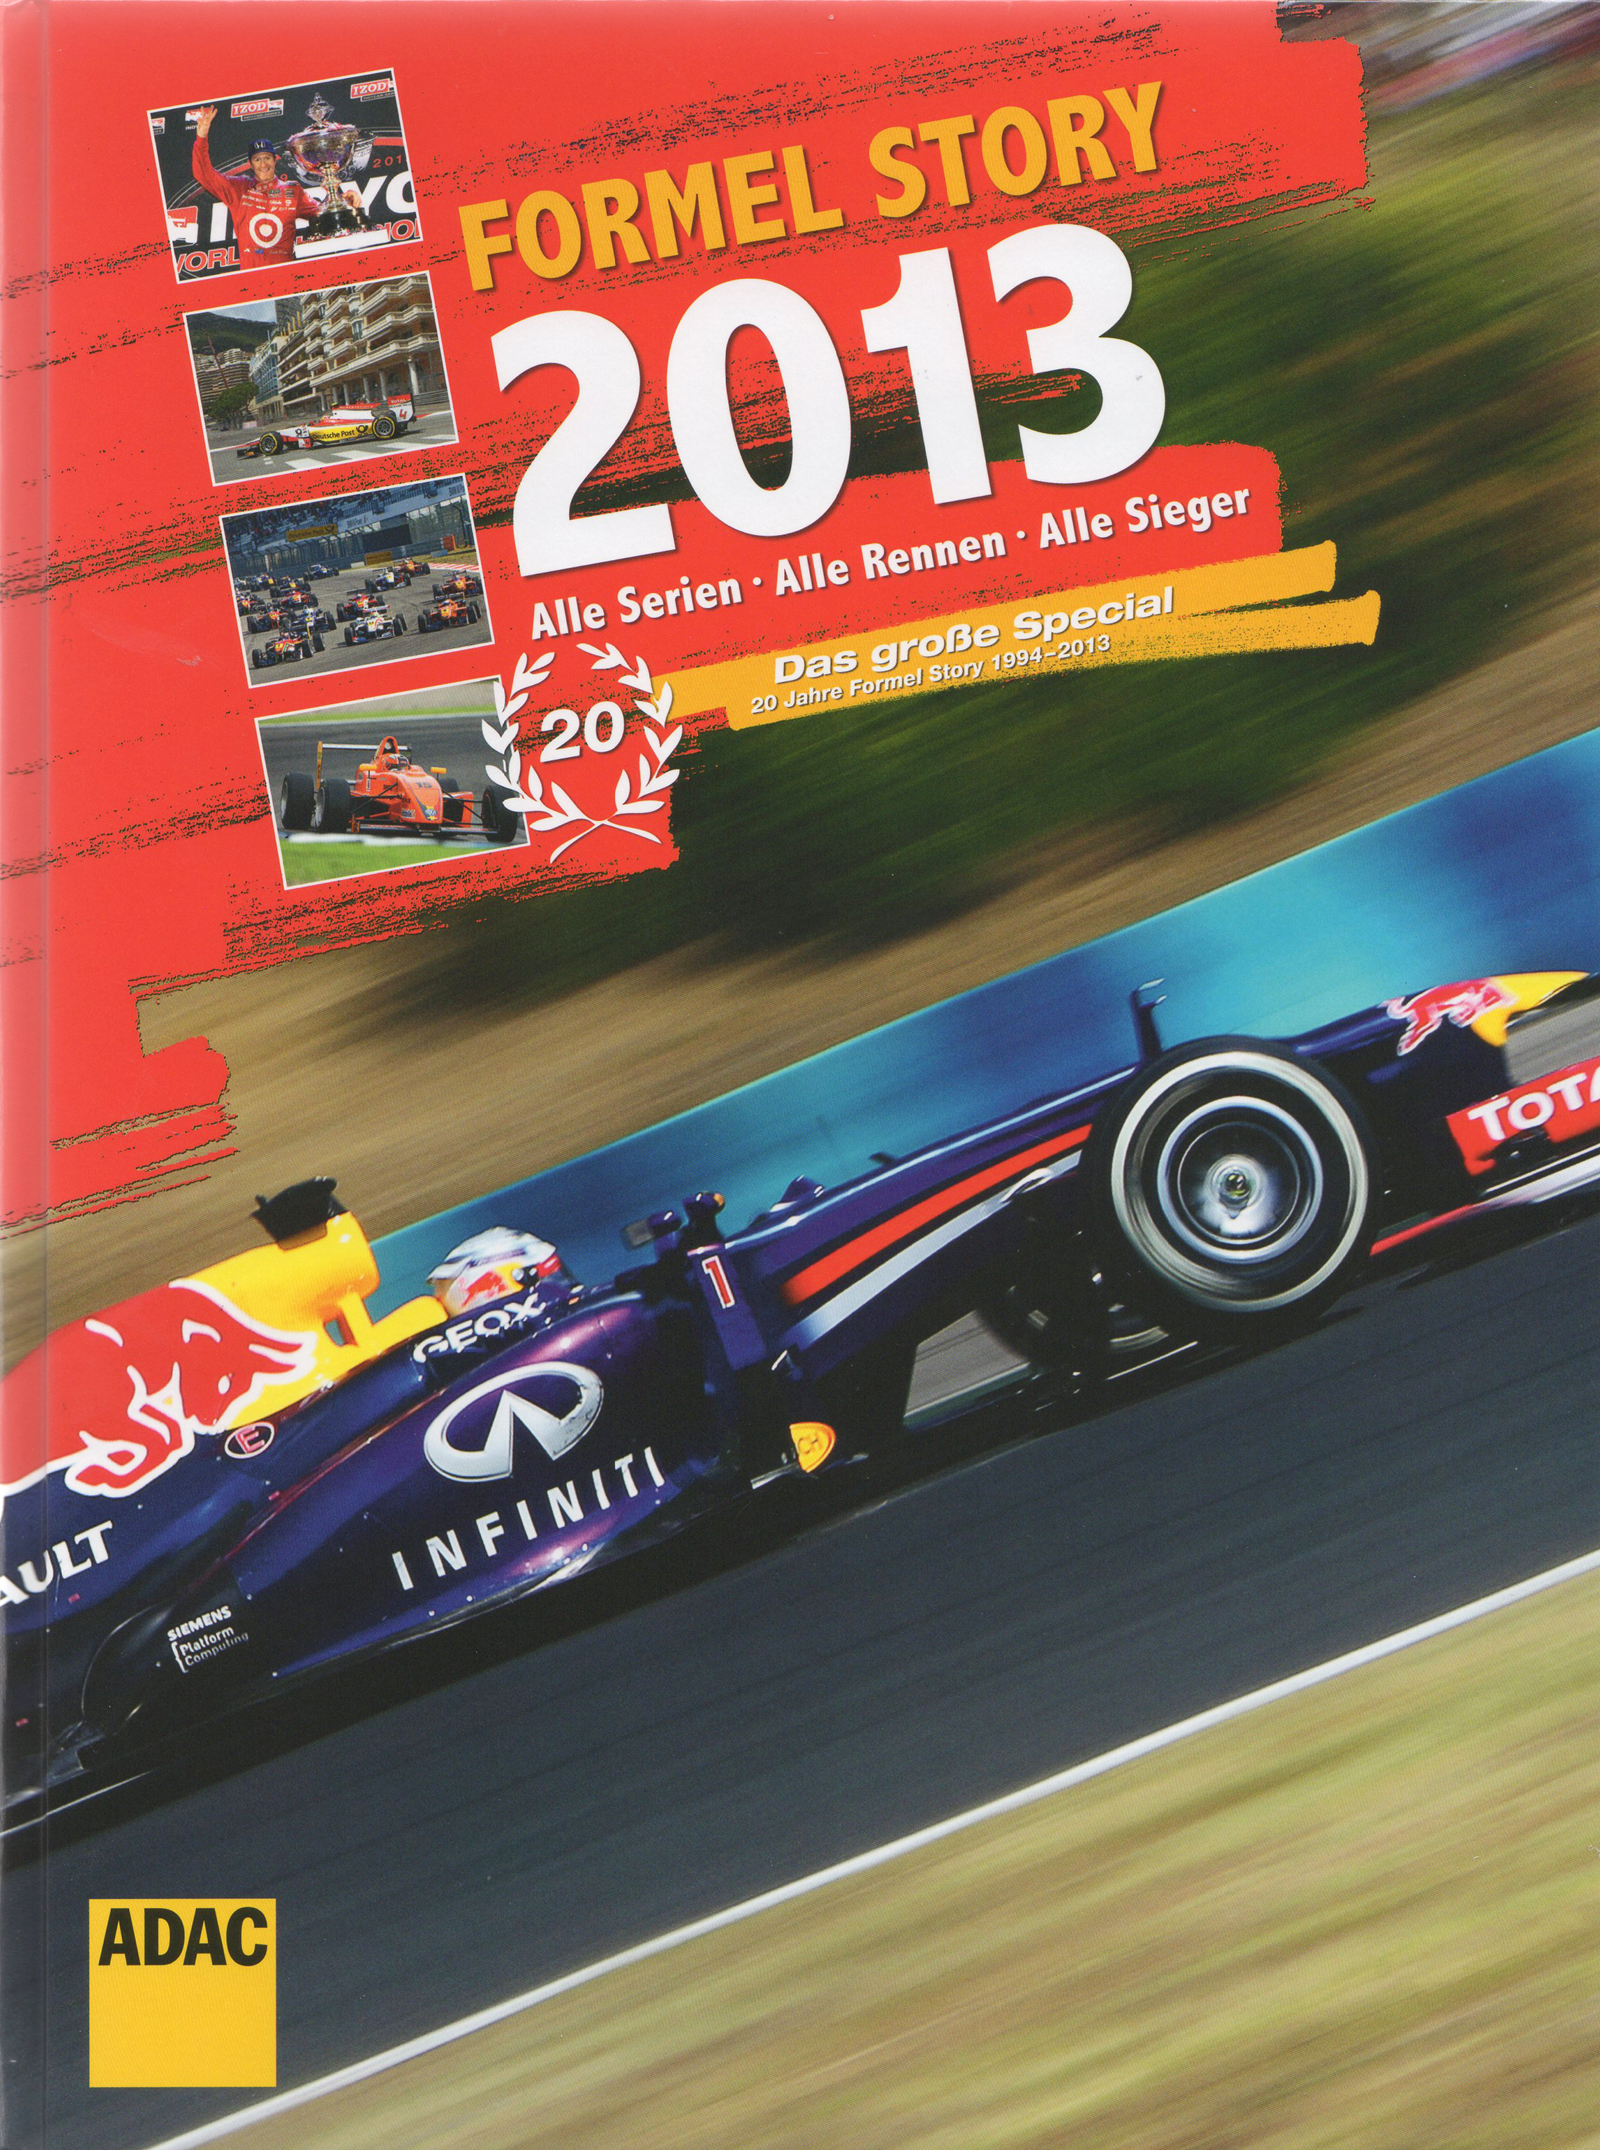 Formel Story 2013